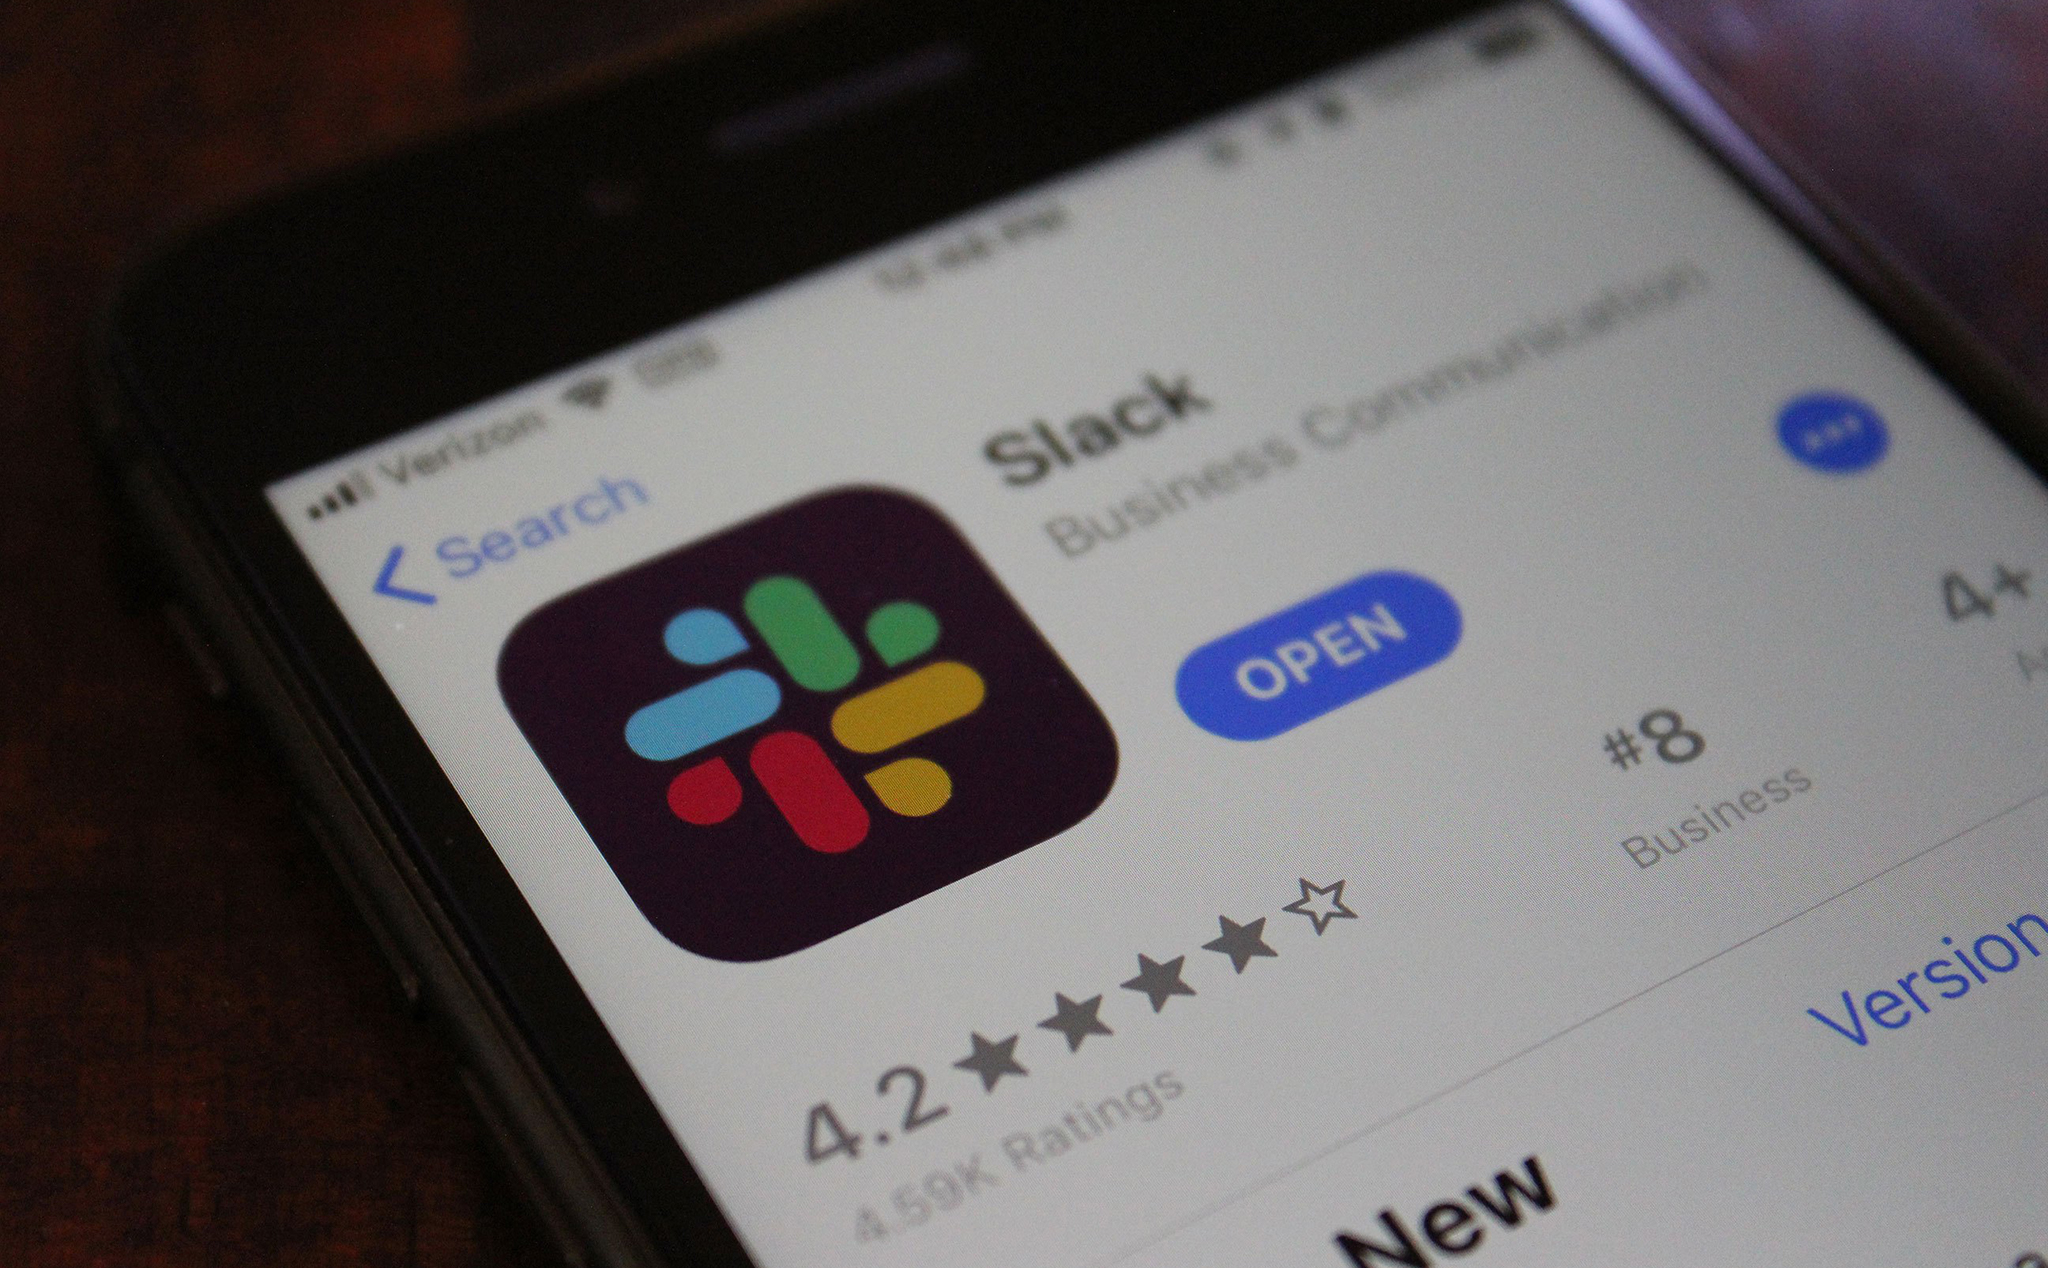 Ứng dụng Slack thay đổi logo mới, màu sắc tương thích, dễ nhìn hơn